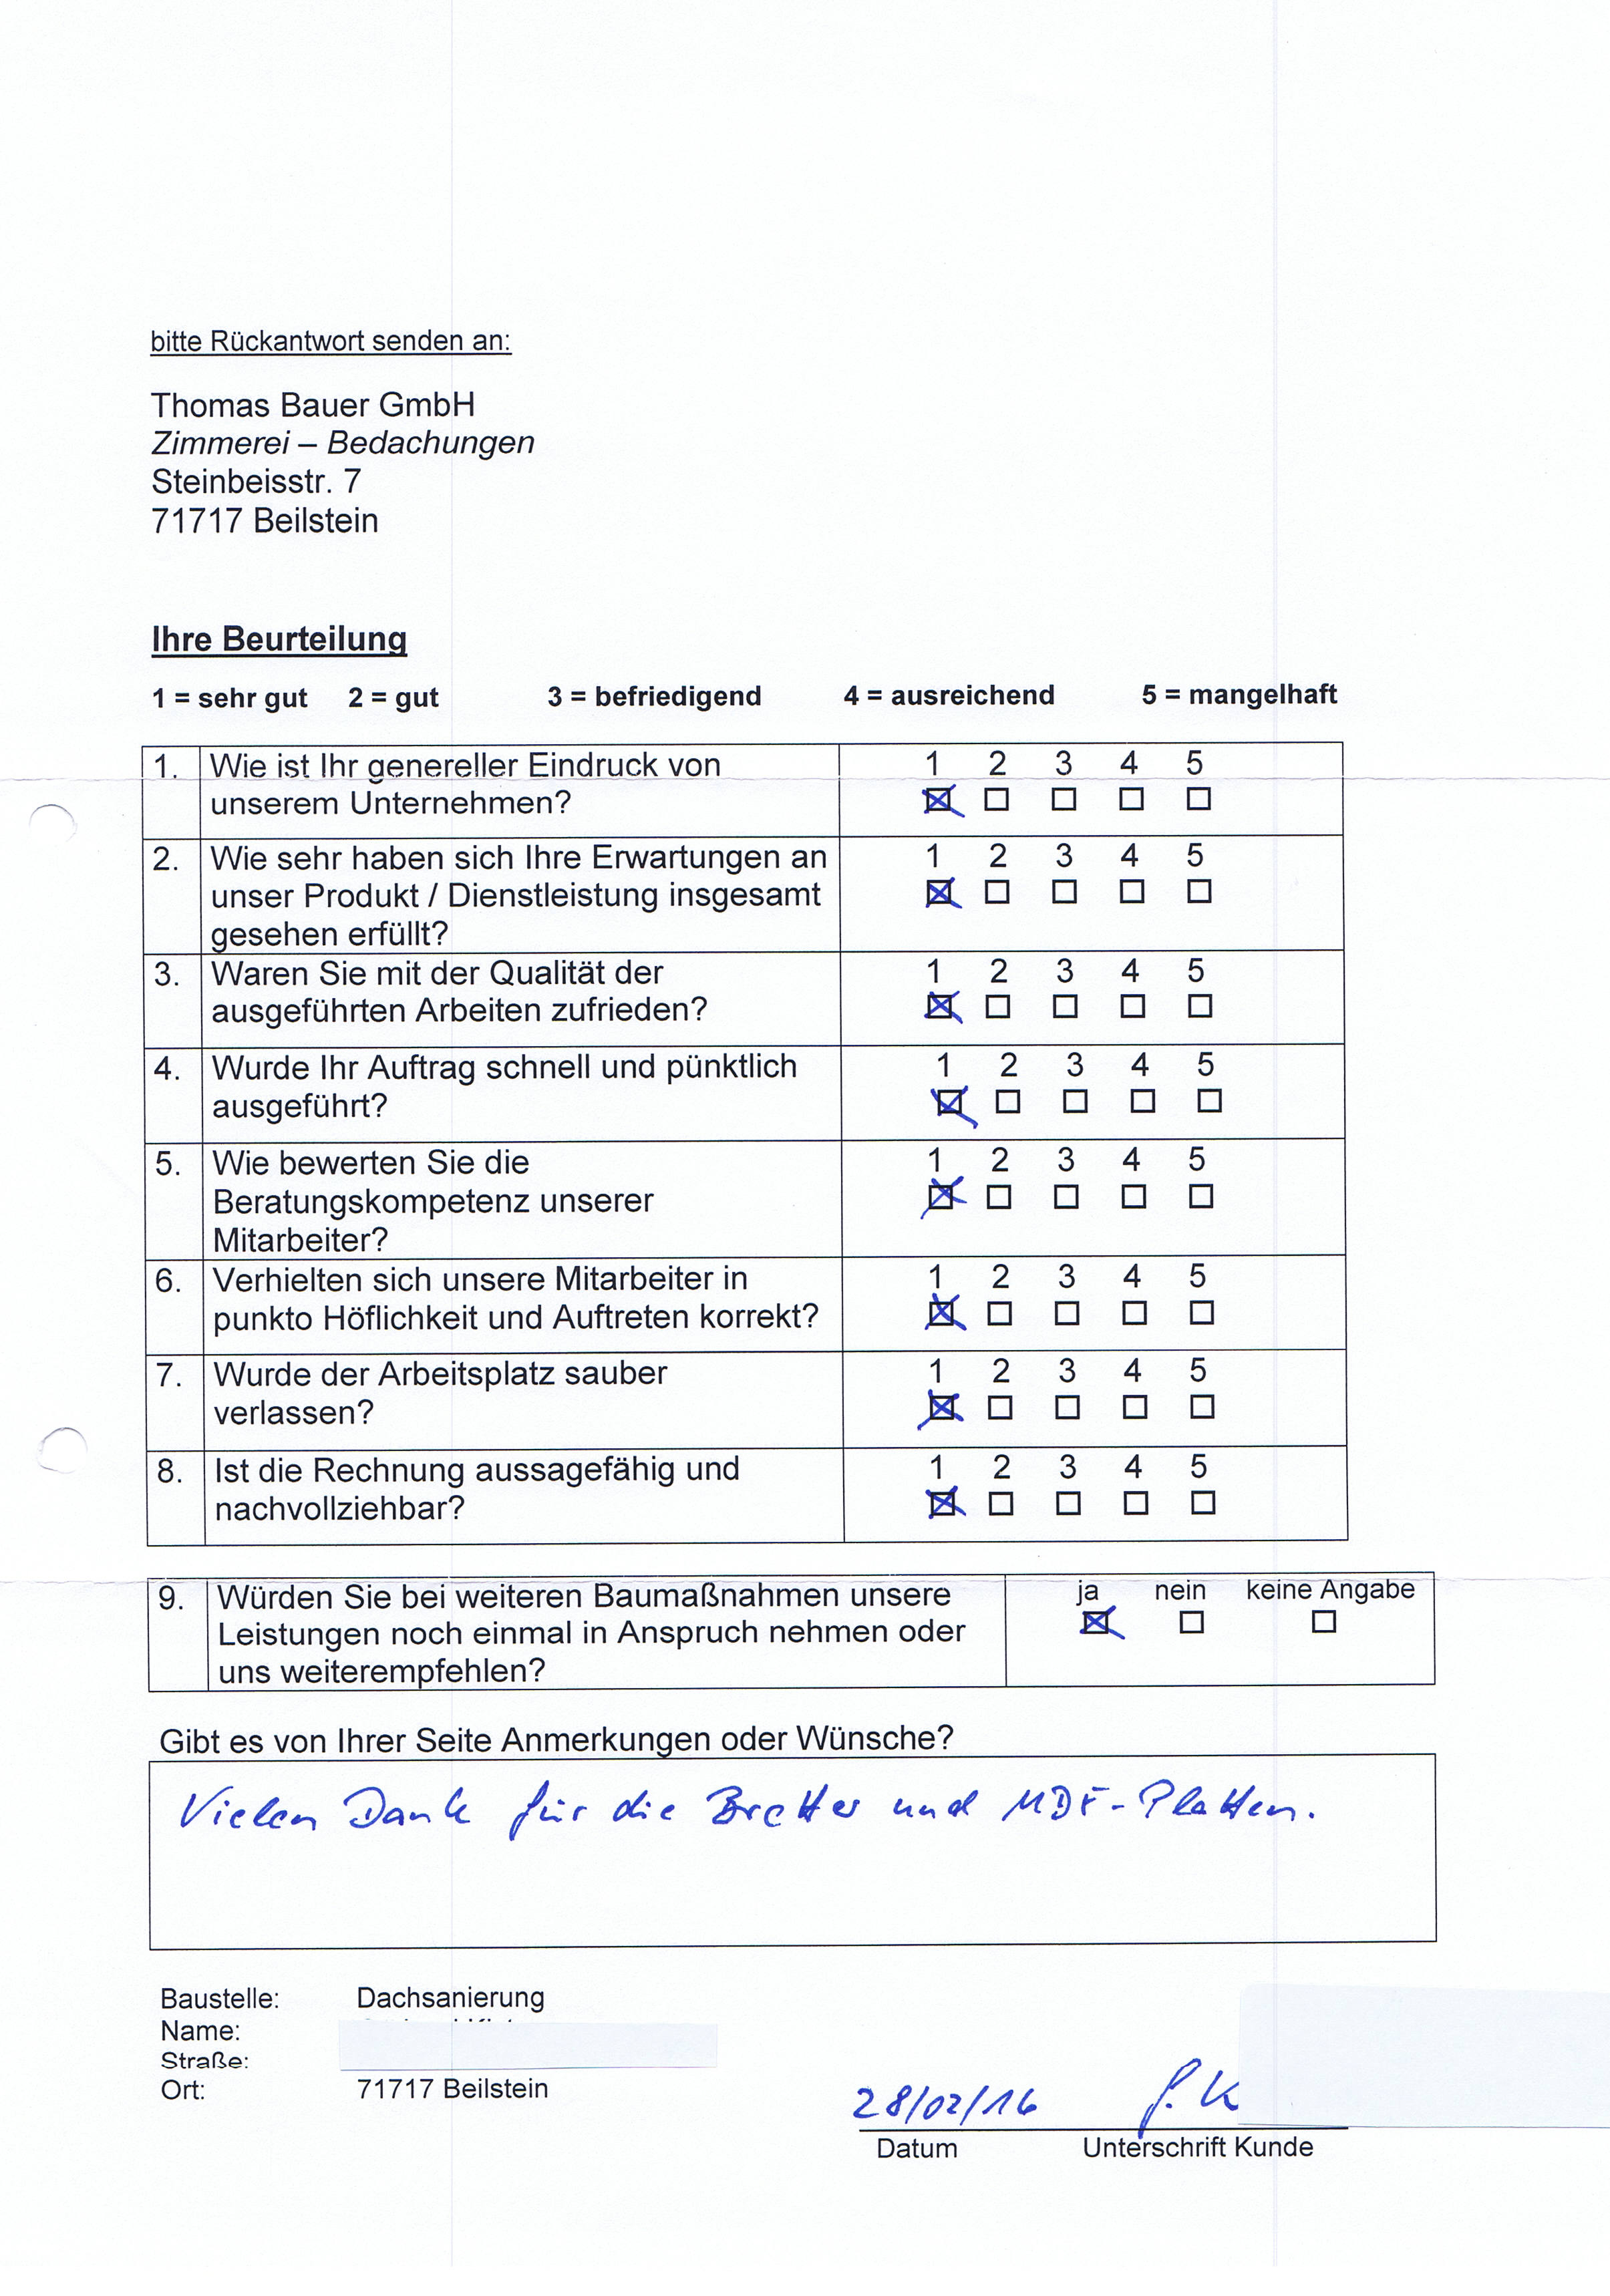 Kundenzufriedenheitsrueckmeldungen Th Bauer GmbH 2